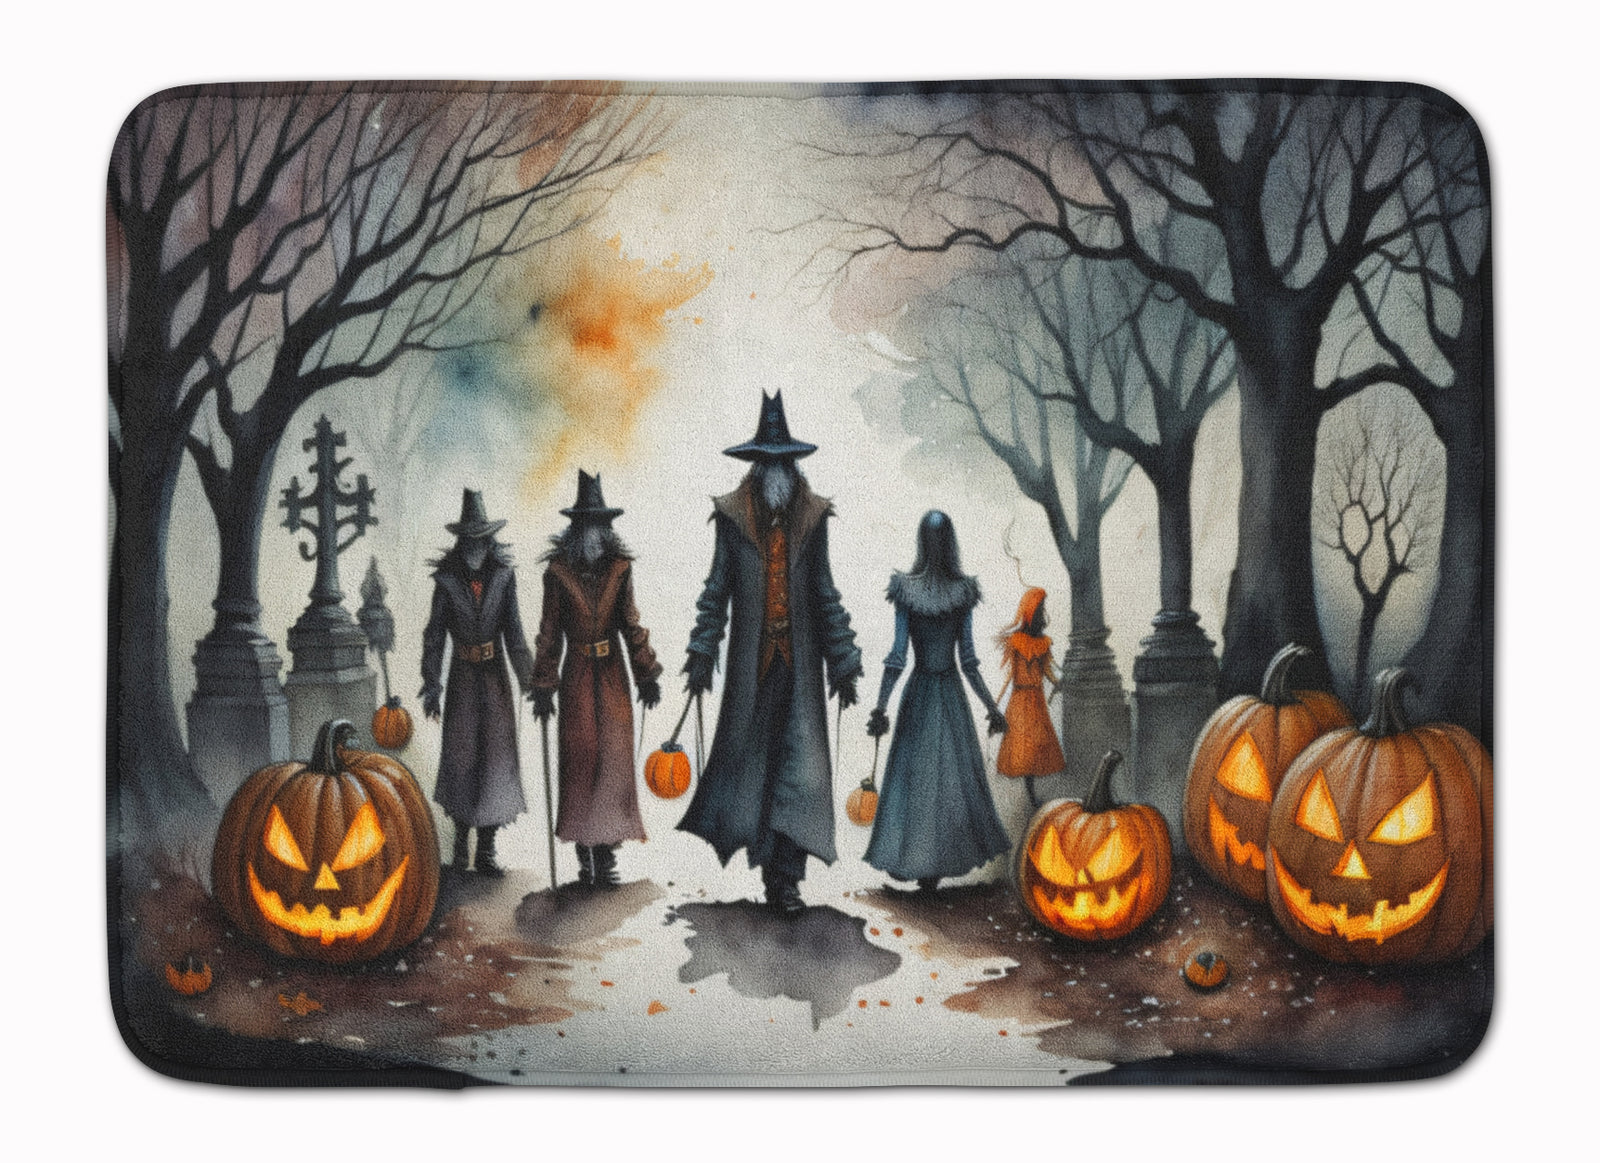 Buy this Vampires Spooky Halloween Memory Foam Kitchen Mat